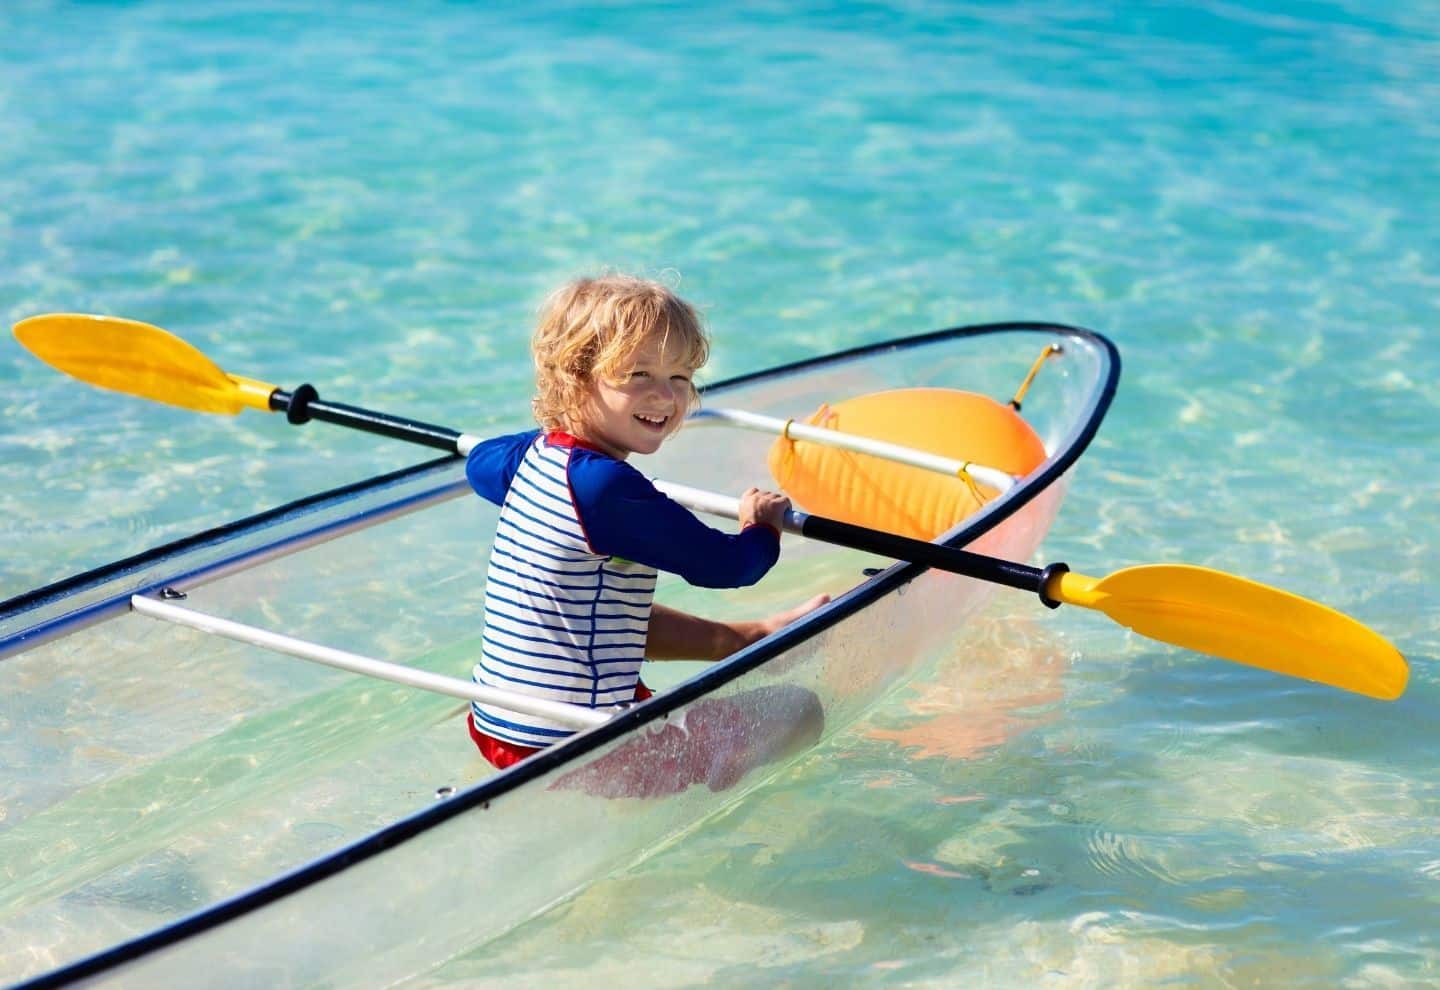 a little kid on a transparent kayak